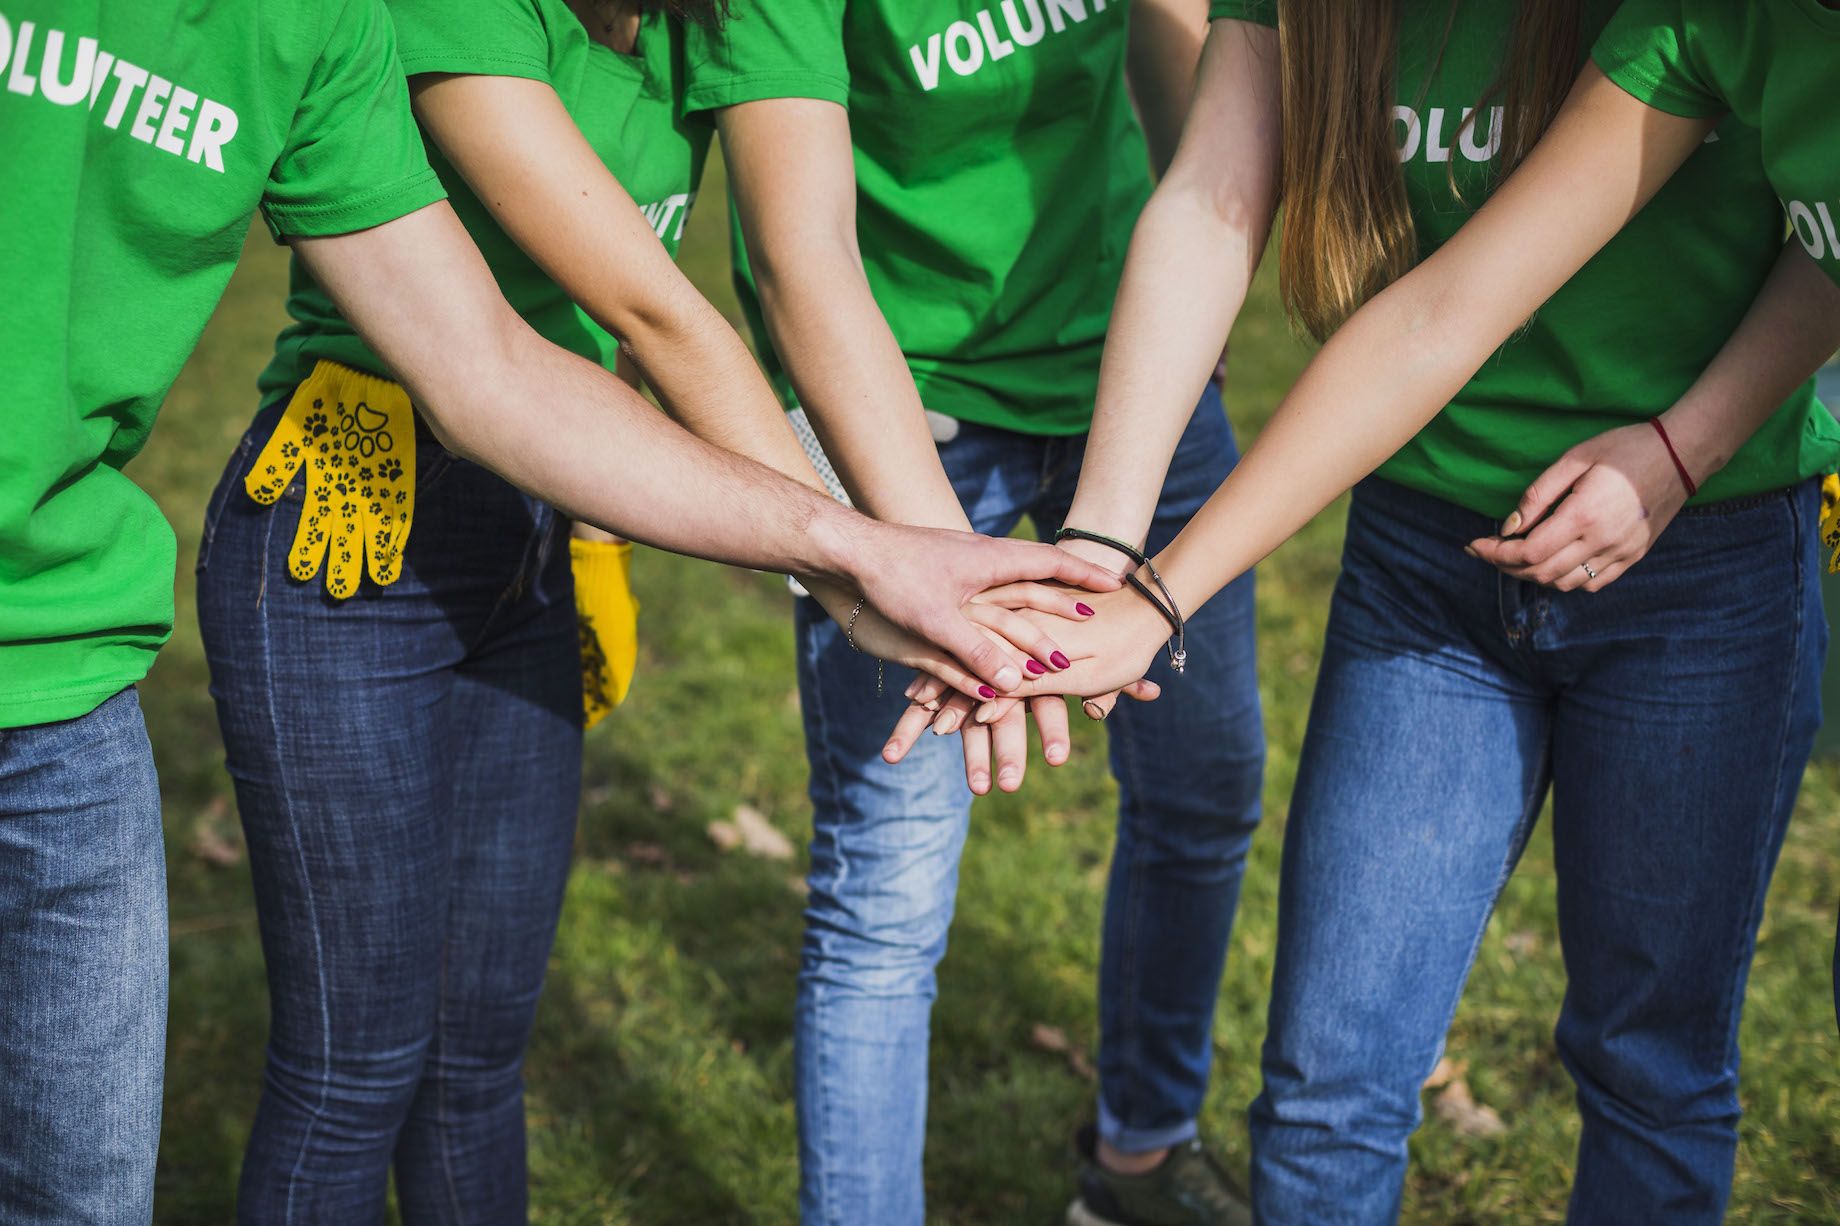 La semana de voluntarios de Riverbed beneficia a más de 30 organizaciones benéficas a nivel mundial